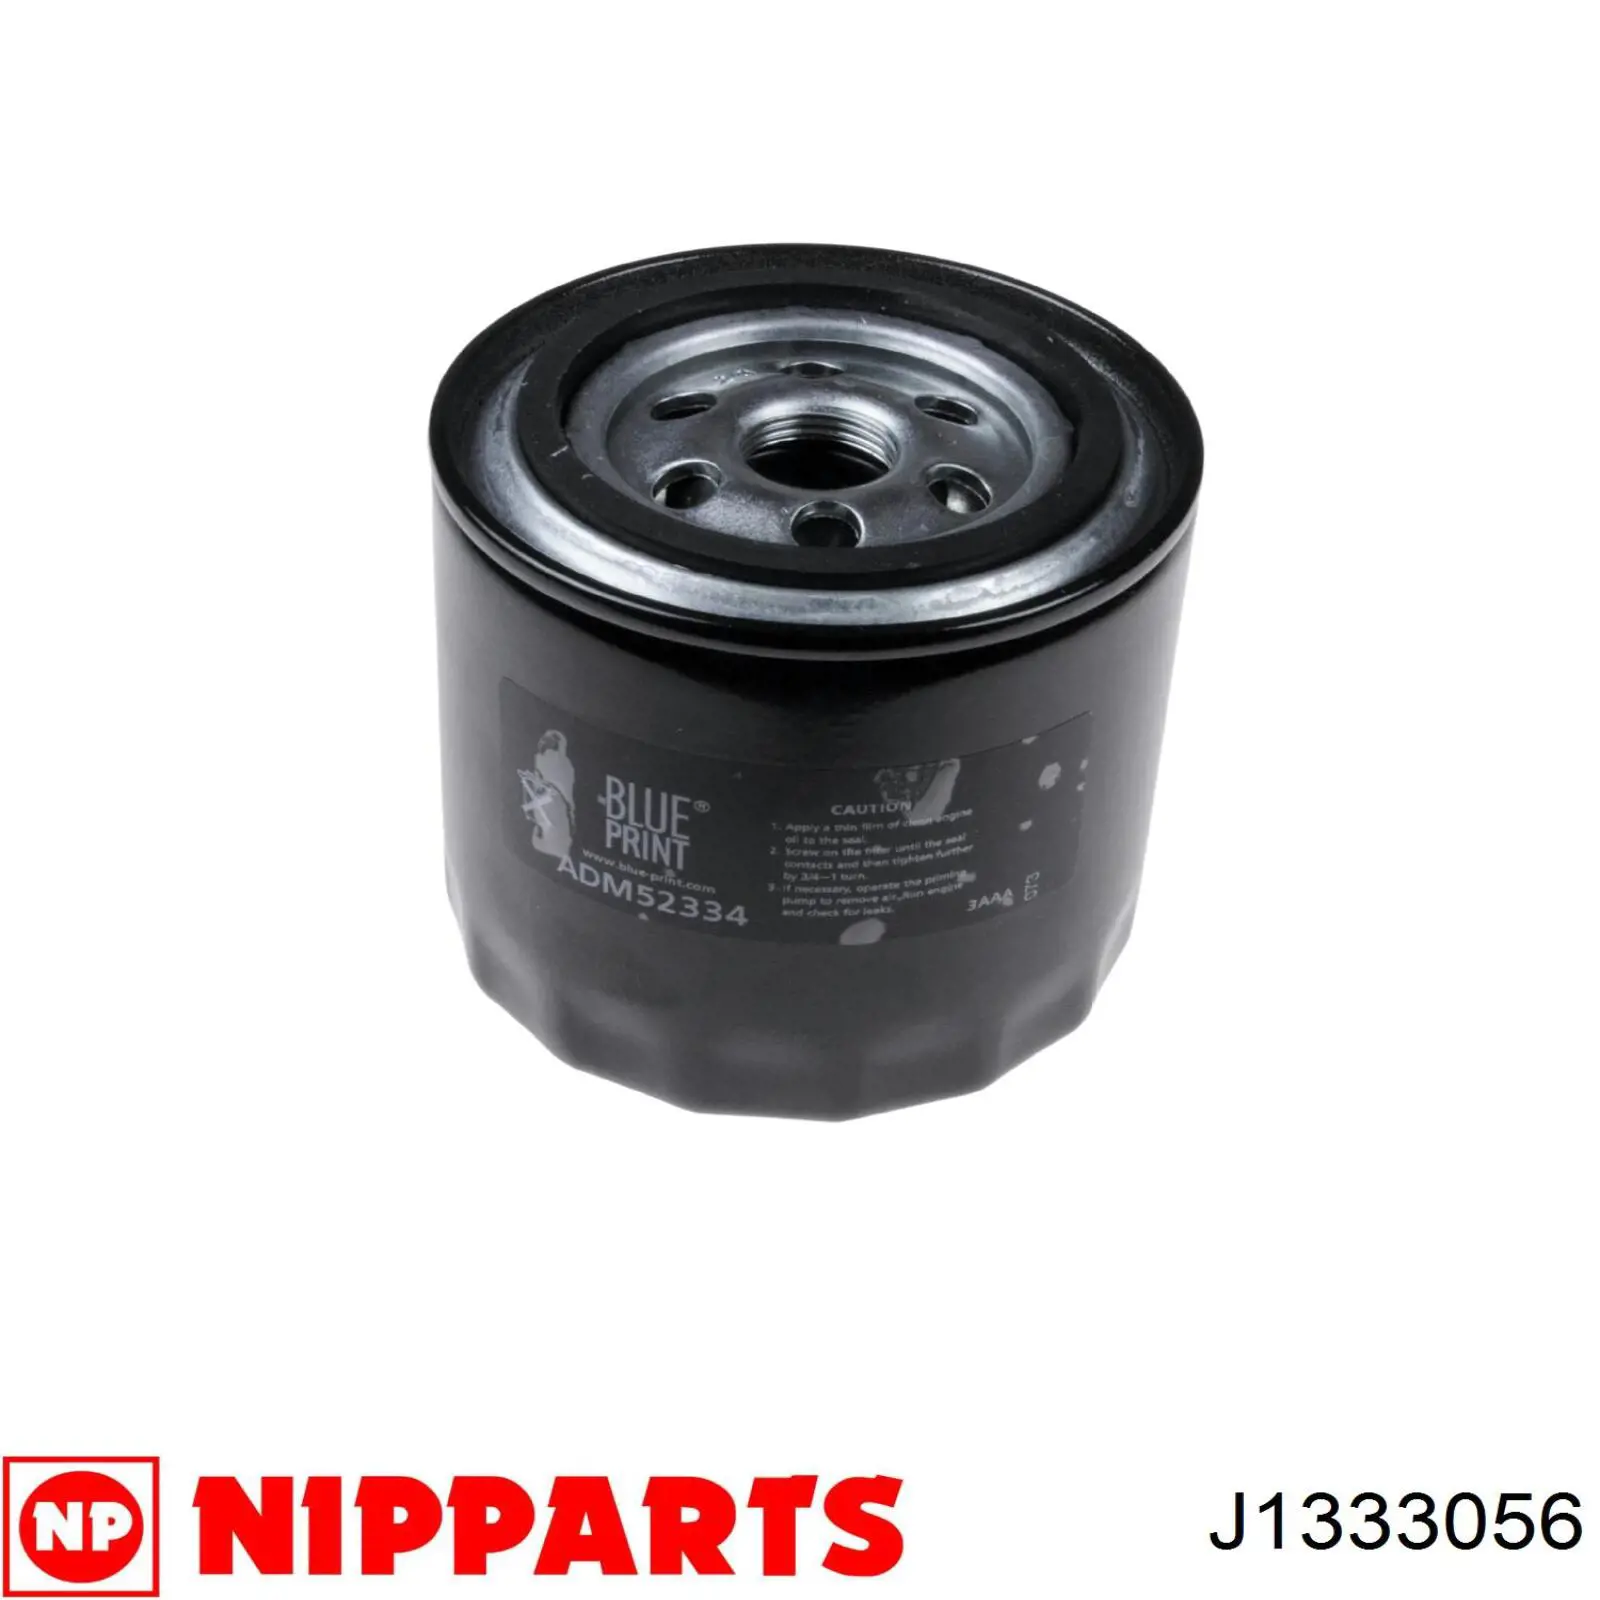 J1333056 Nipparts filtro combustible